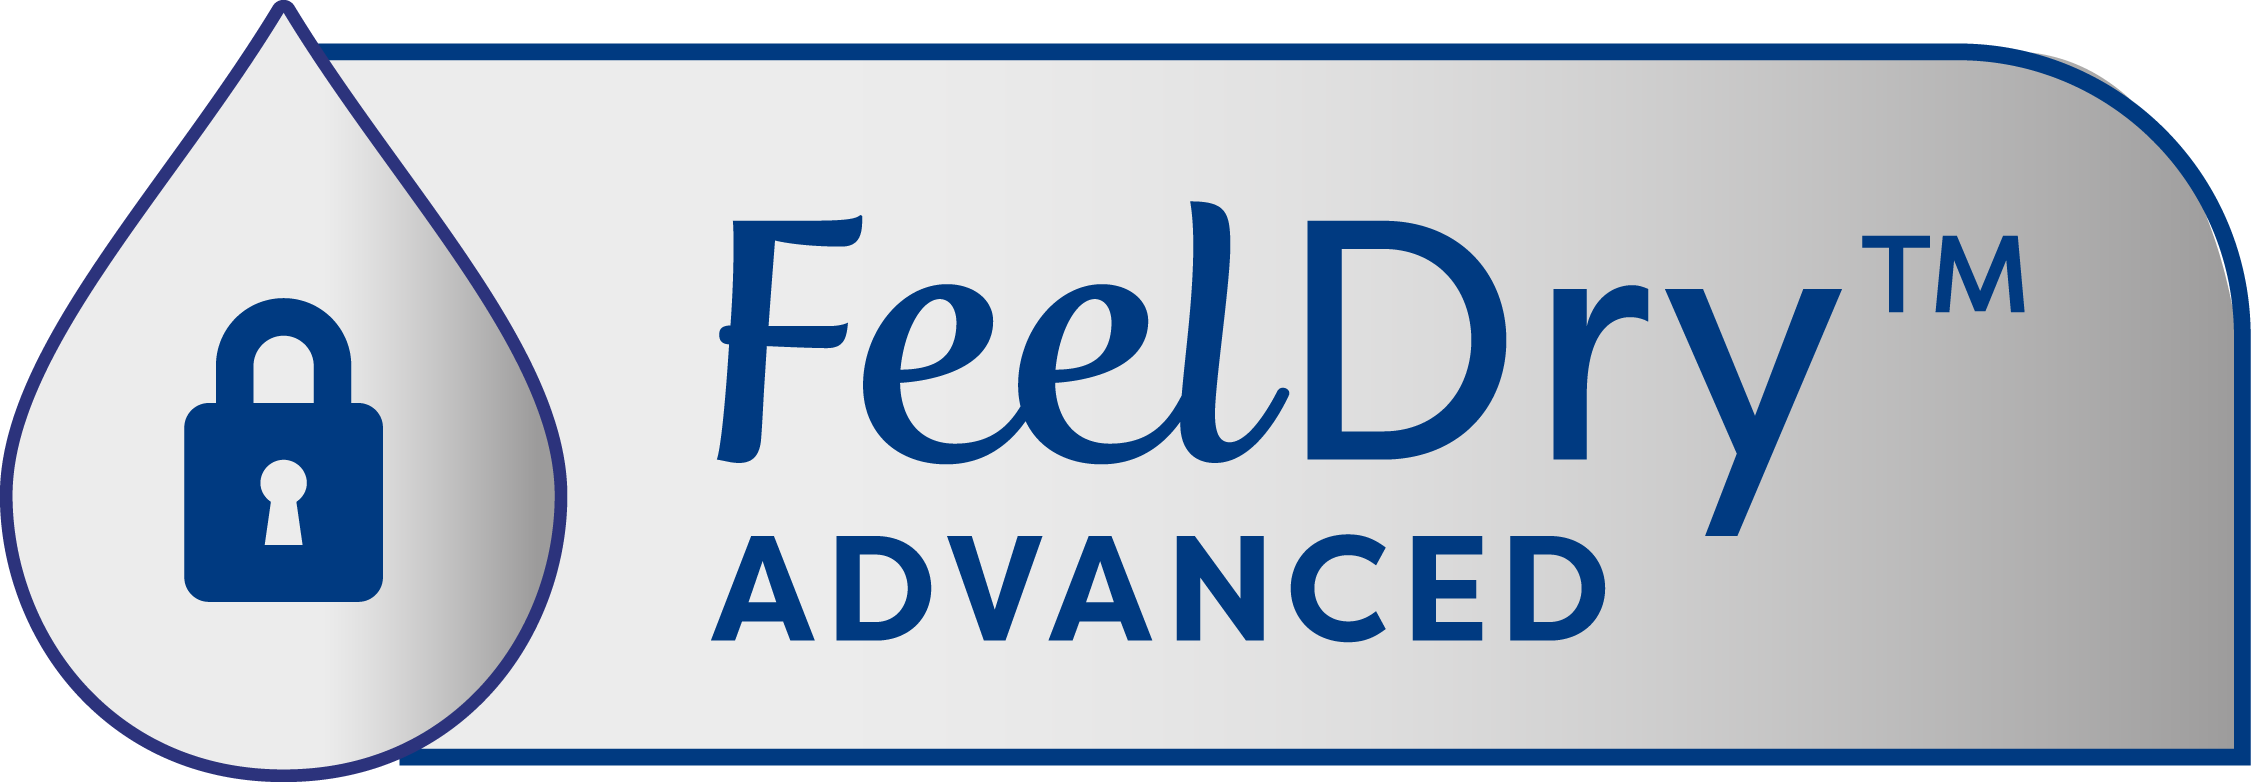 Inkontinenční pomůcky TENA rychle absorbují tekutinu díky technologii FeelDry Advanced™